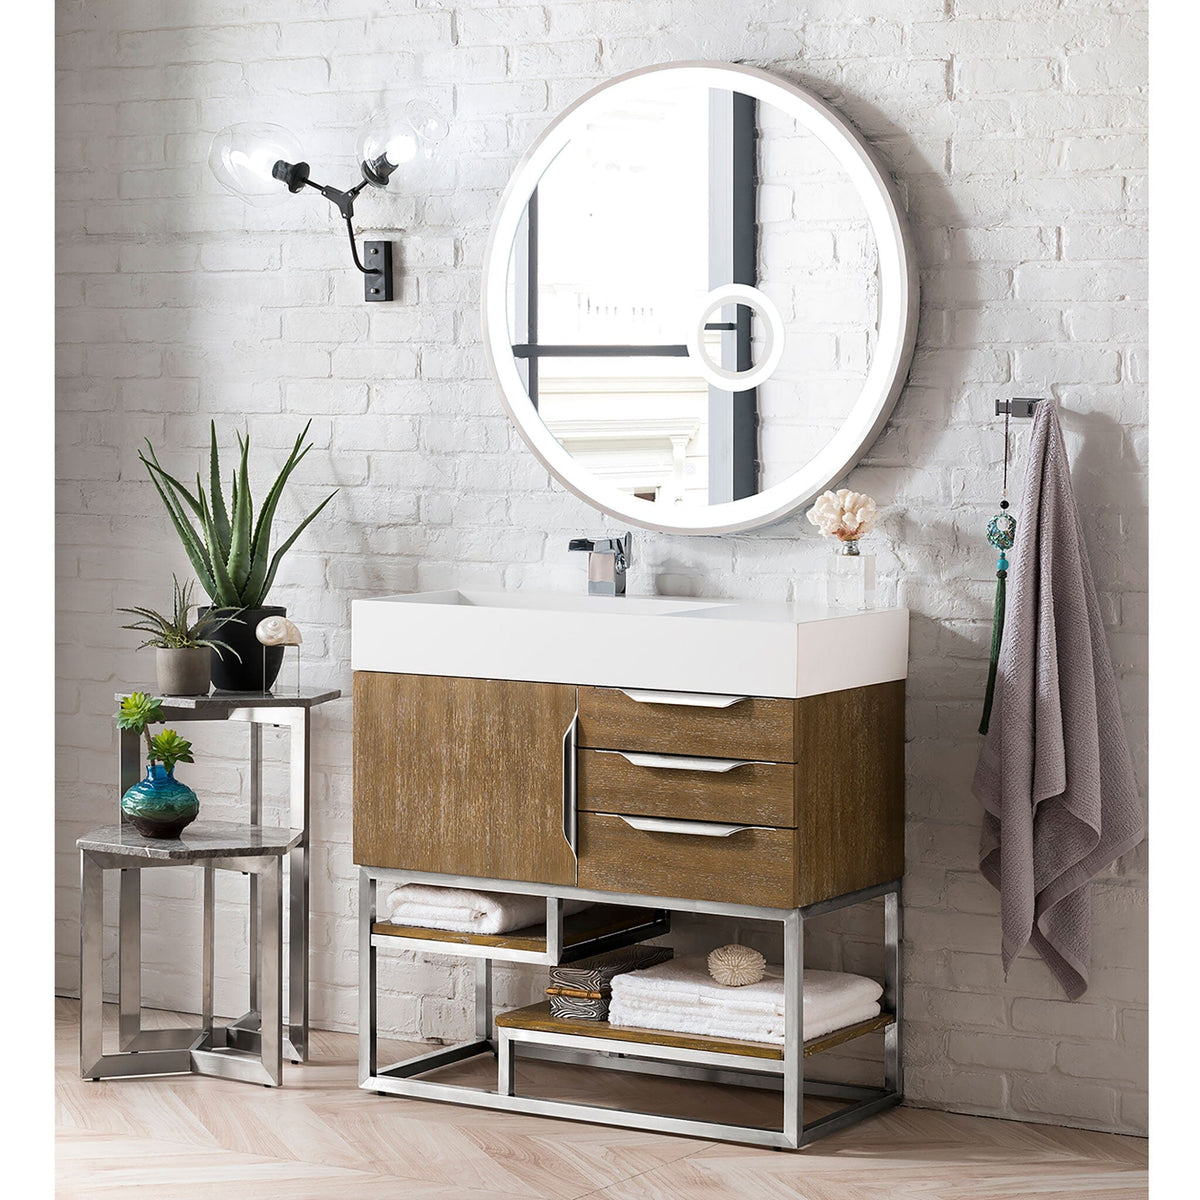 36" Columbia Single Bathroom Vanity, Latte Oak w/ Brushed Nickel Base